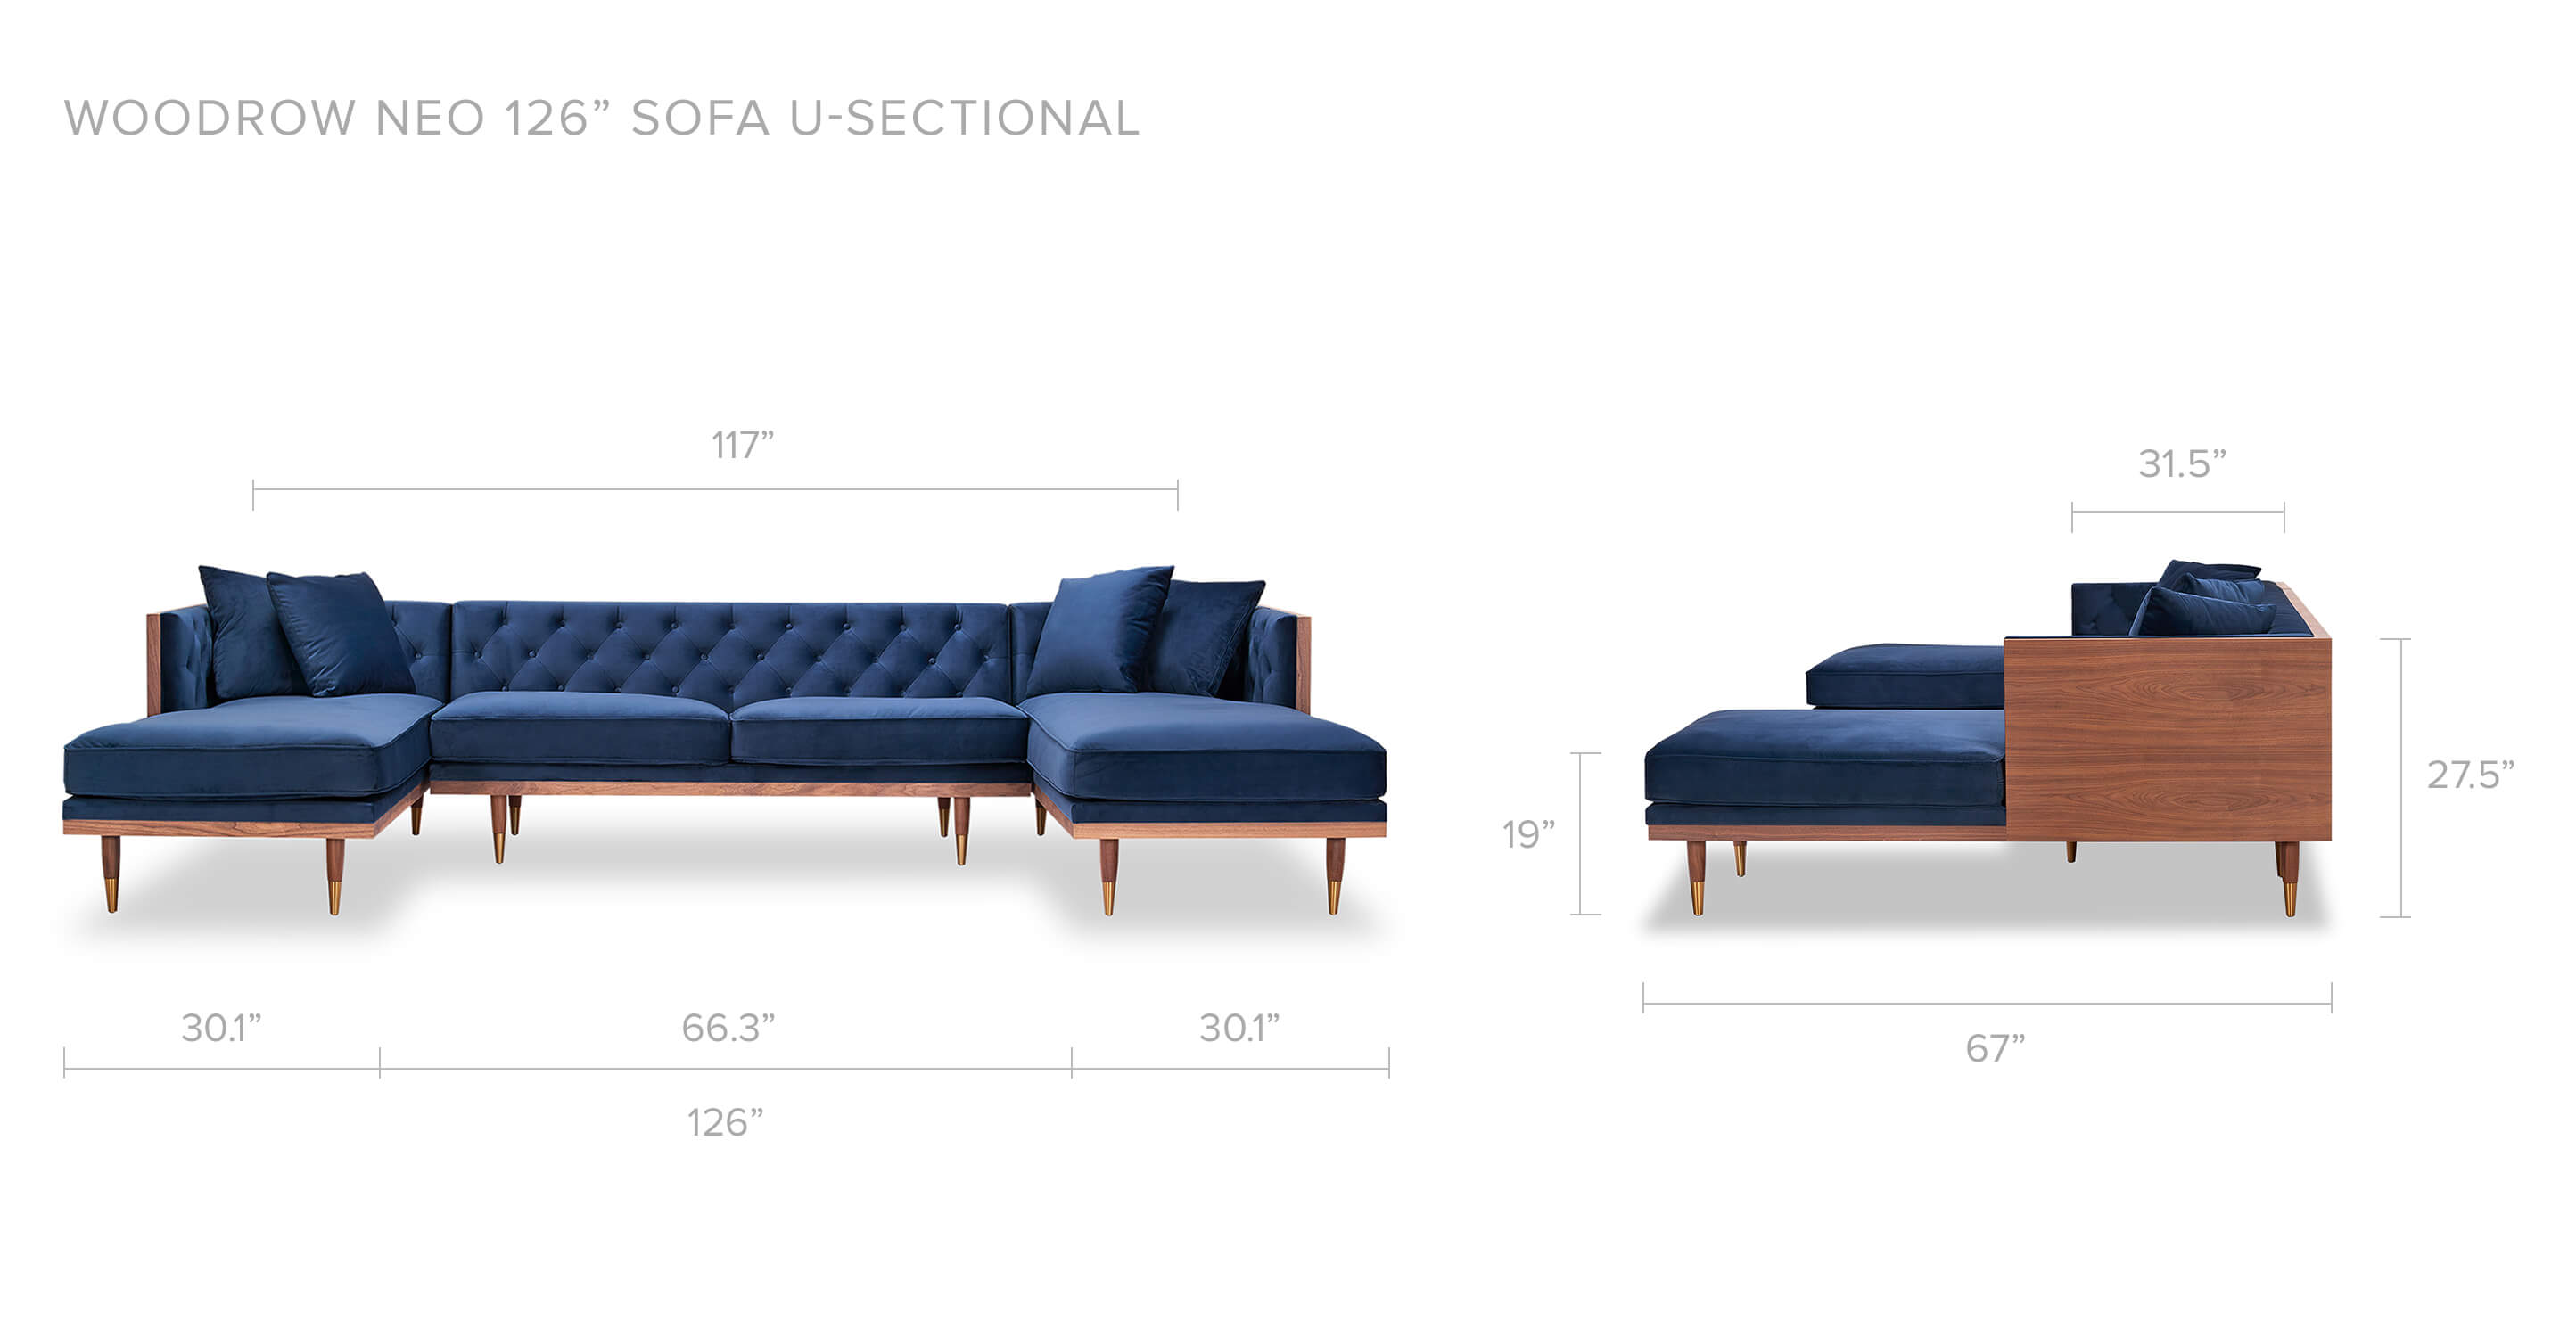 Persian Velvet Woodrow Neo 126" Modern U Sectional Sofa